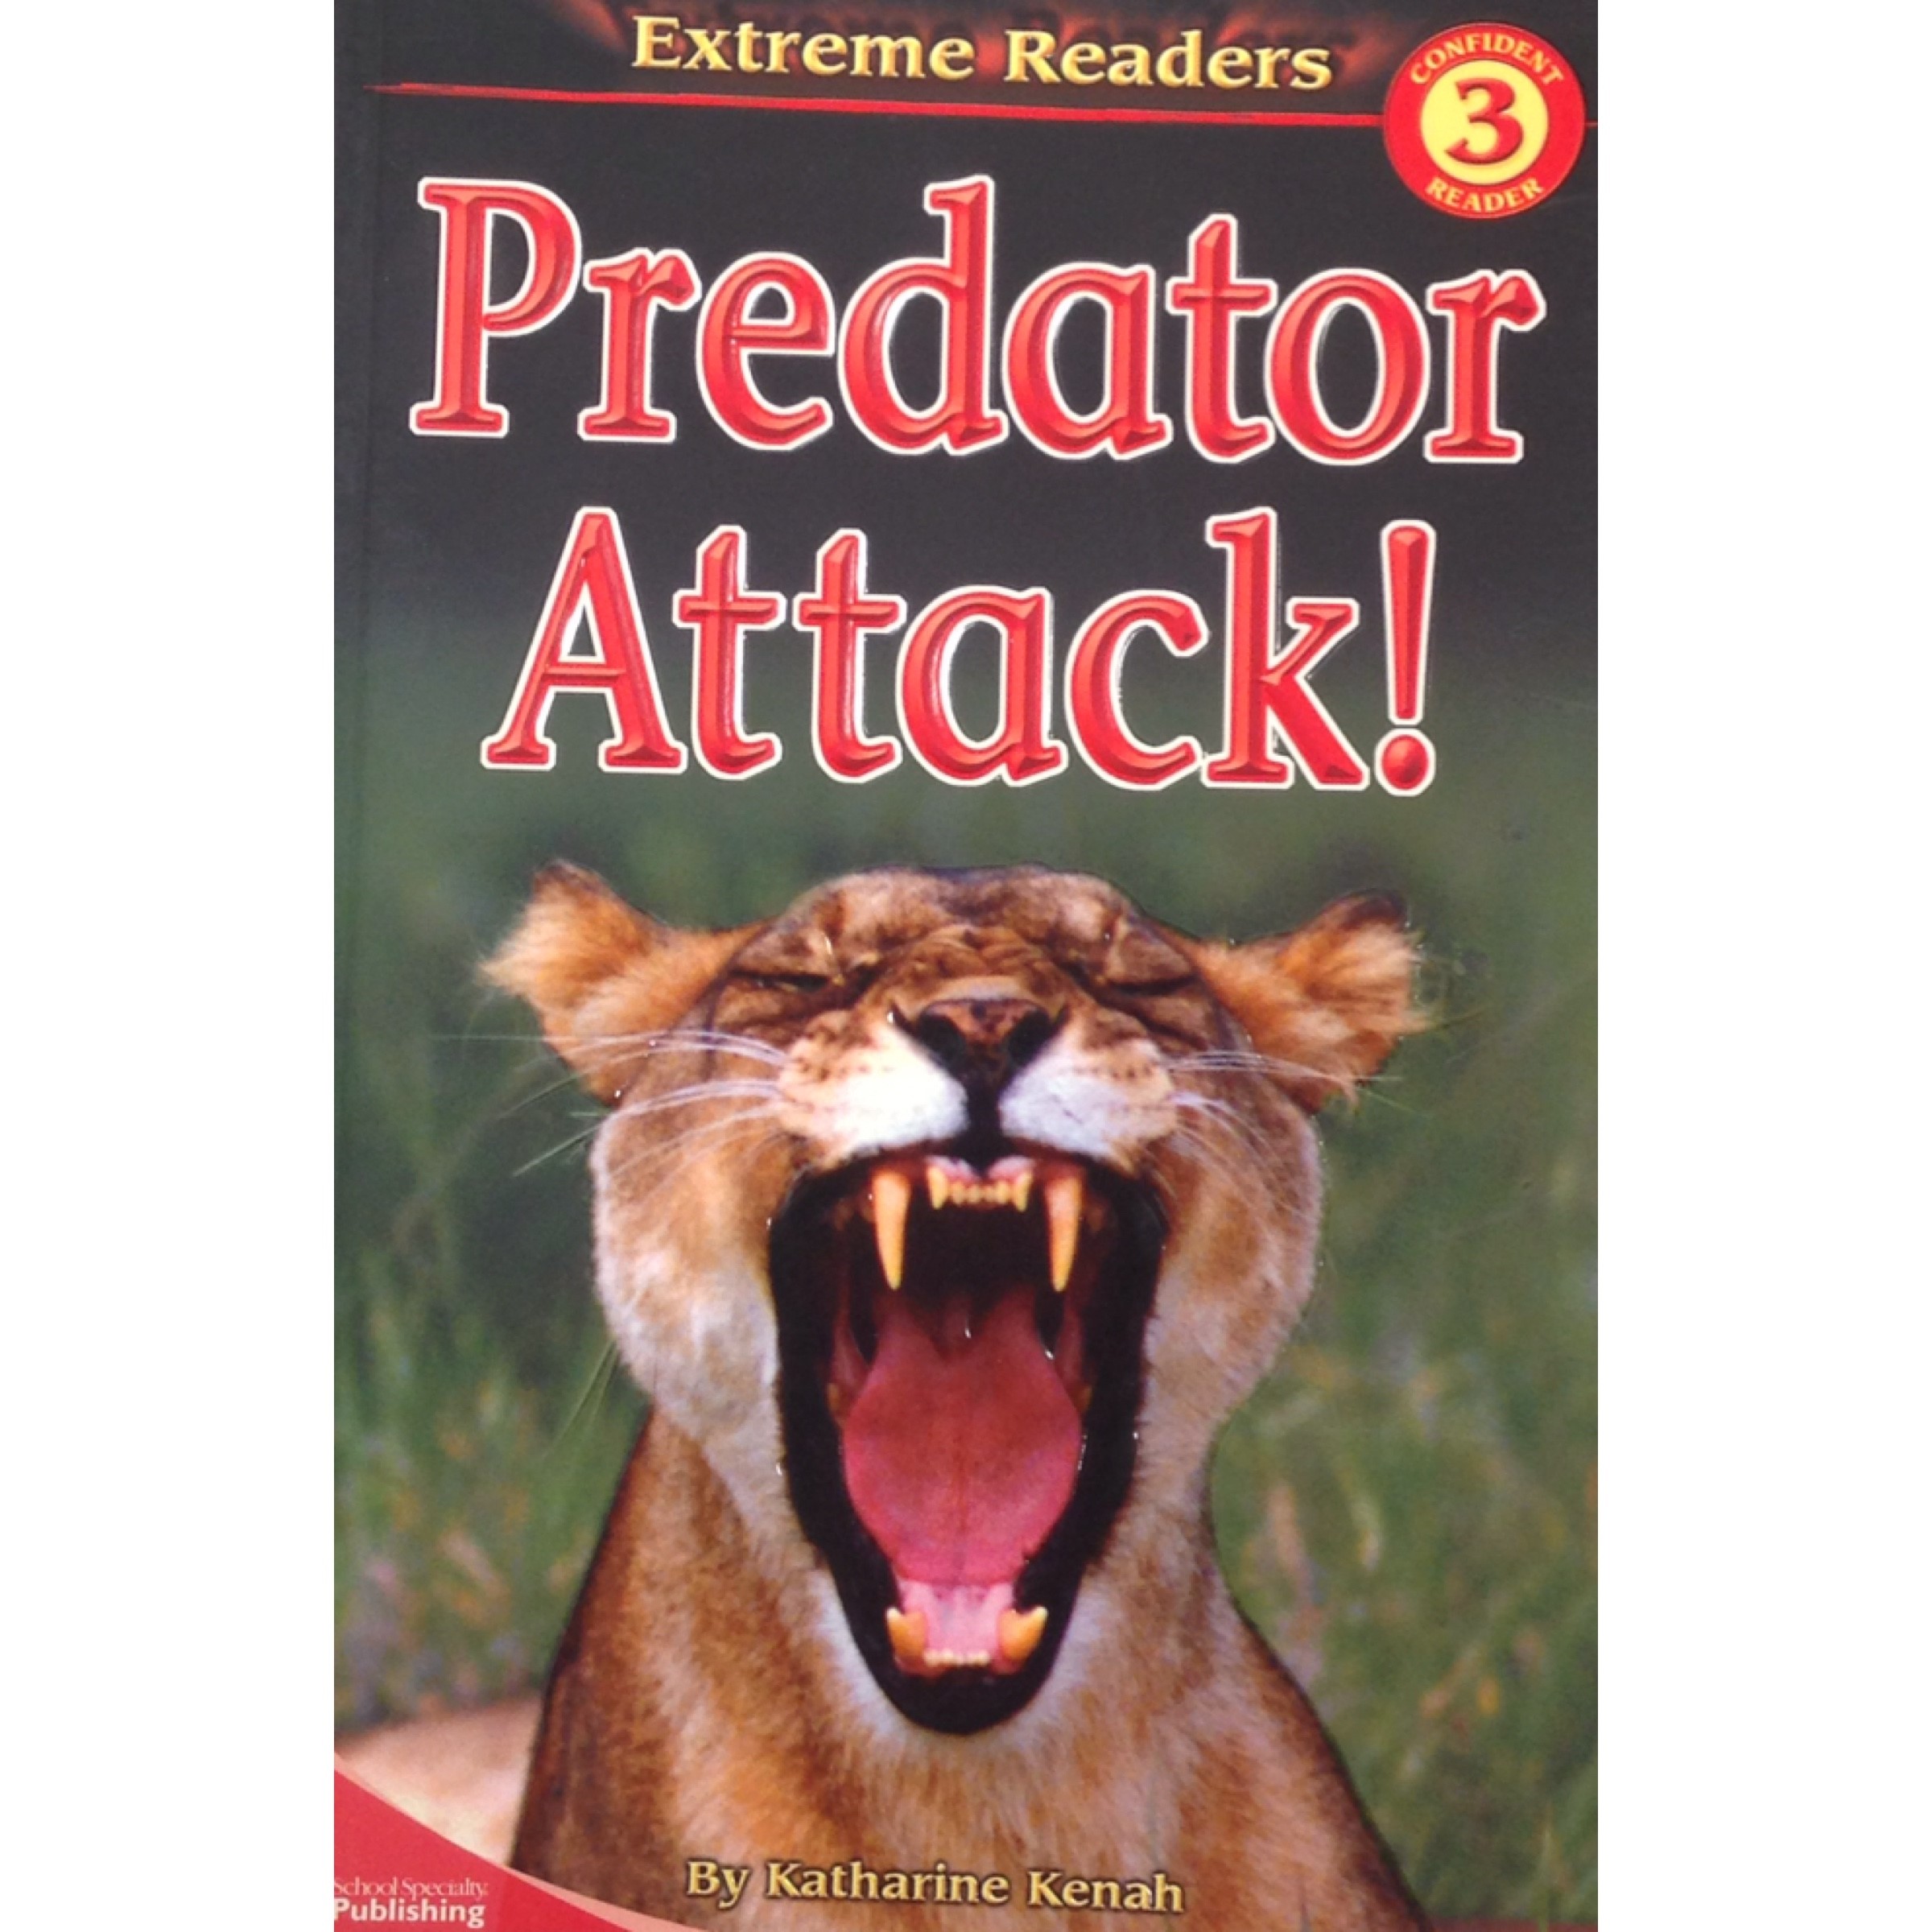 Predator Attack!